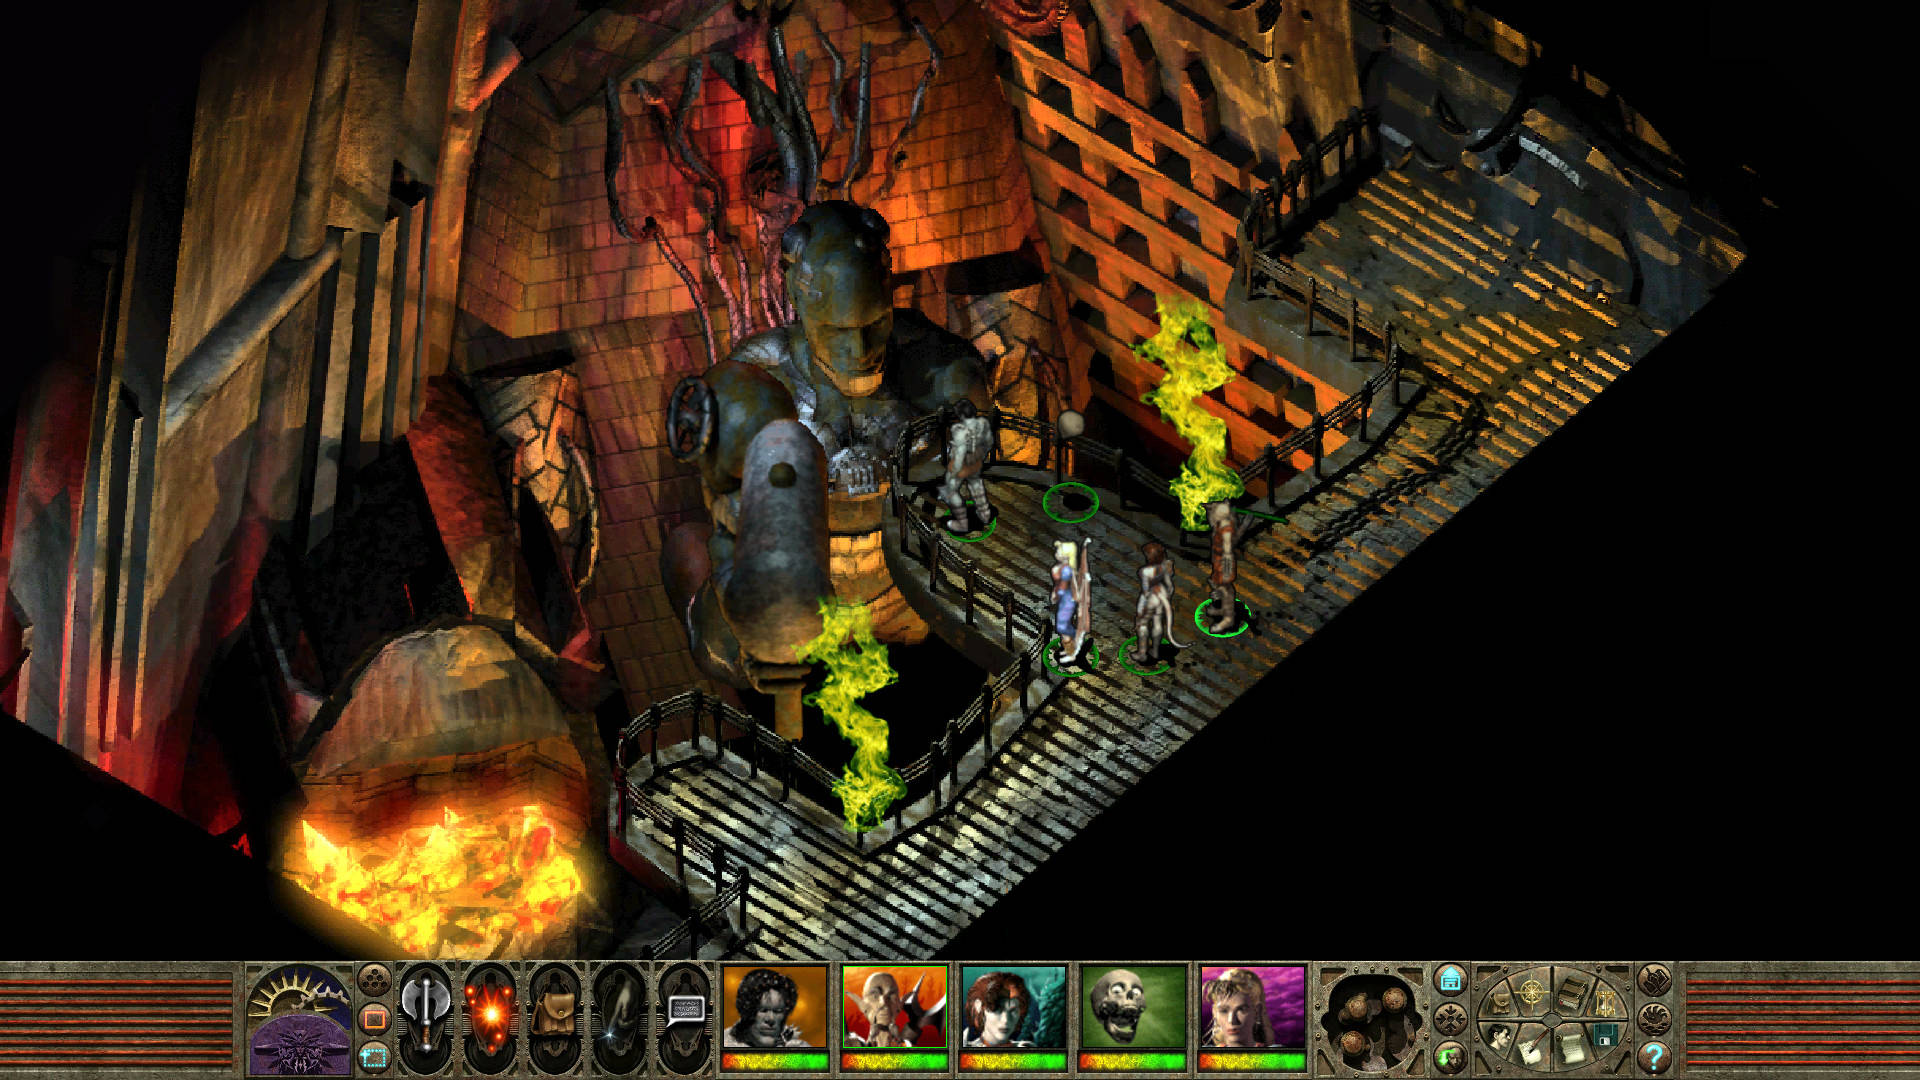 Una scena di Planescape Torment, uno dei migliori giochi DND, in cui la festa parla con un fabbro gigante